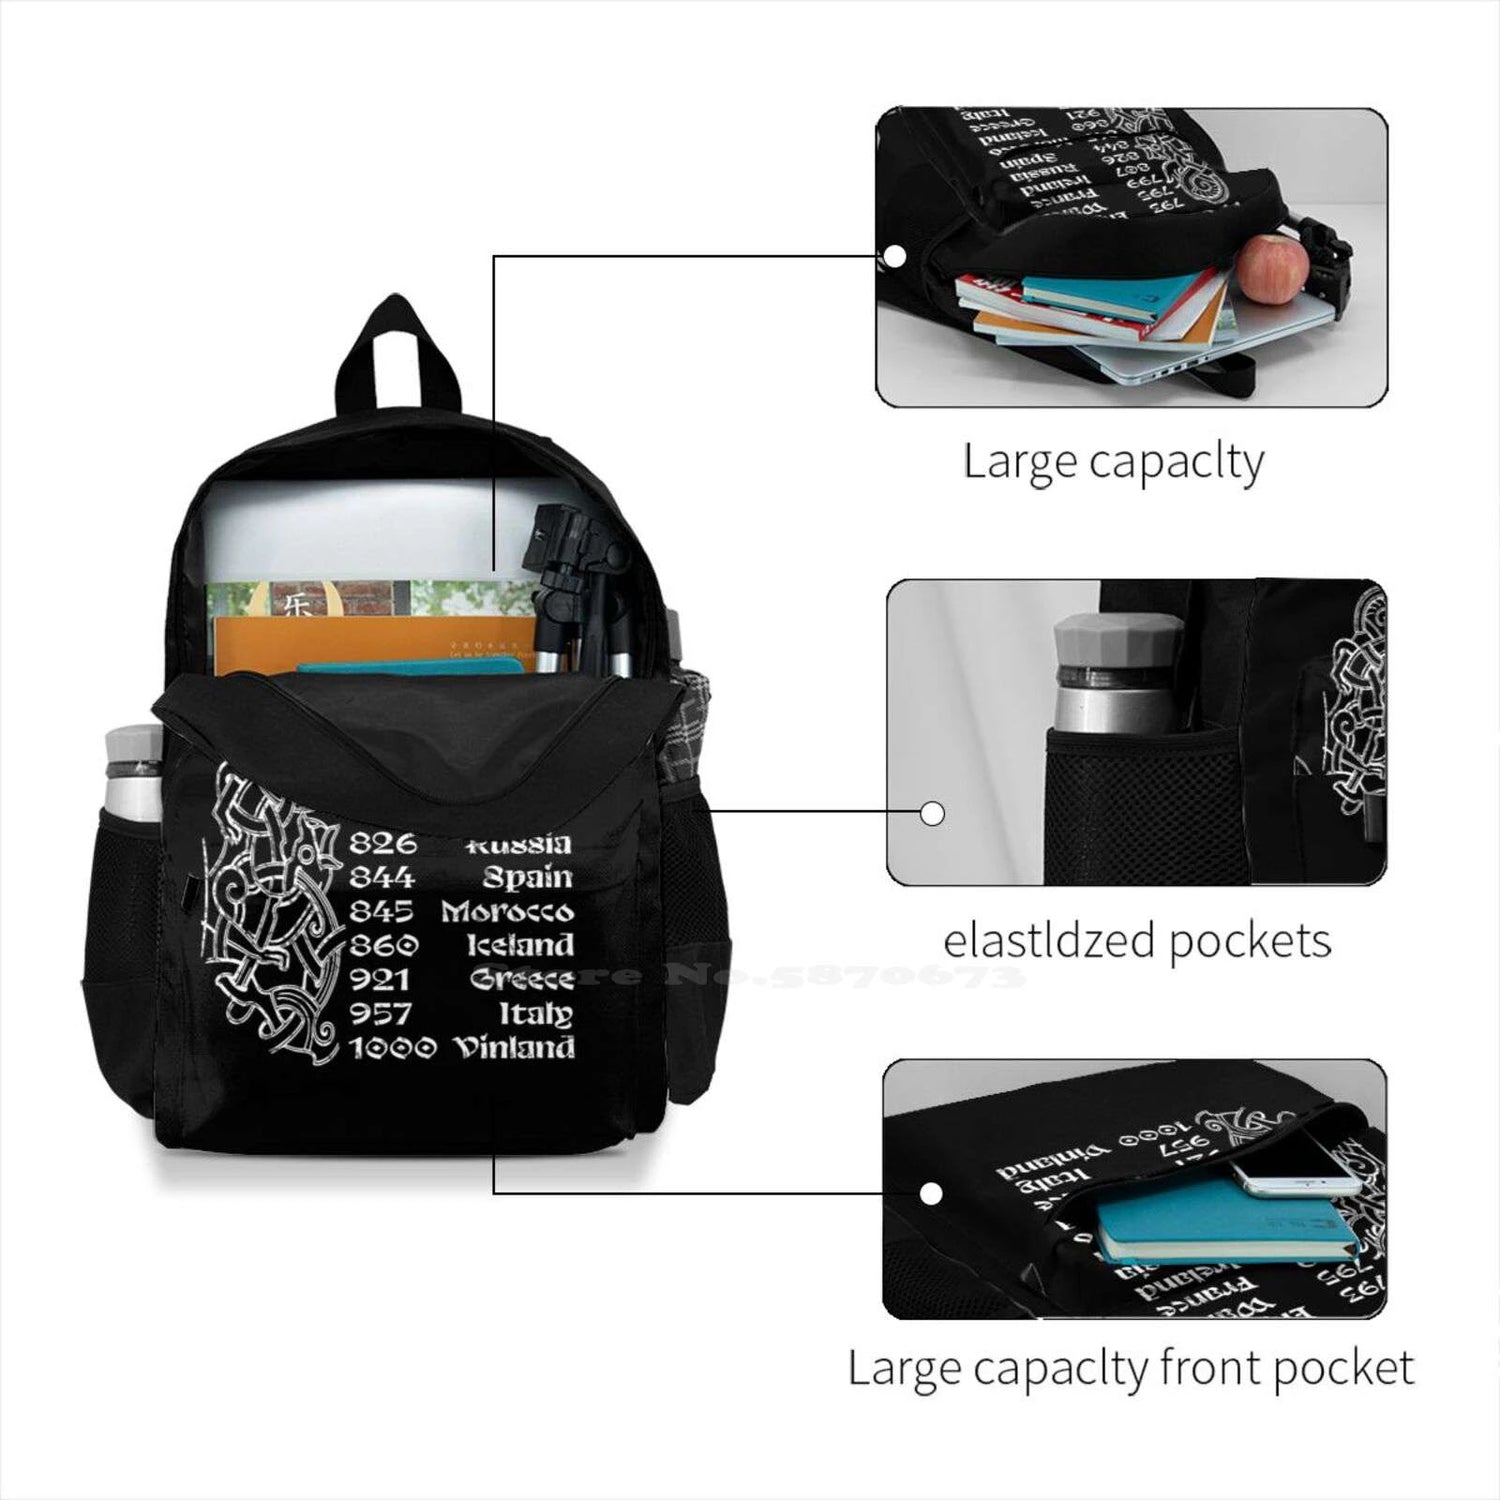 VIKING World Tour Large Capacity Backpack